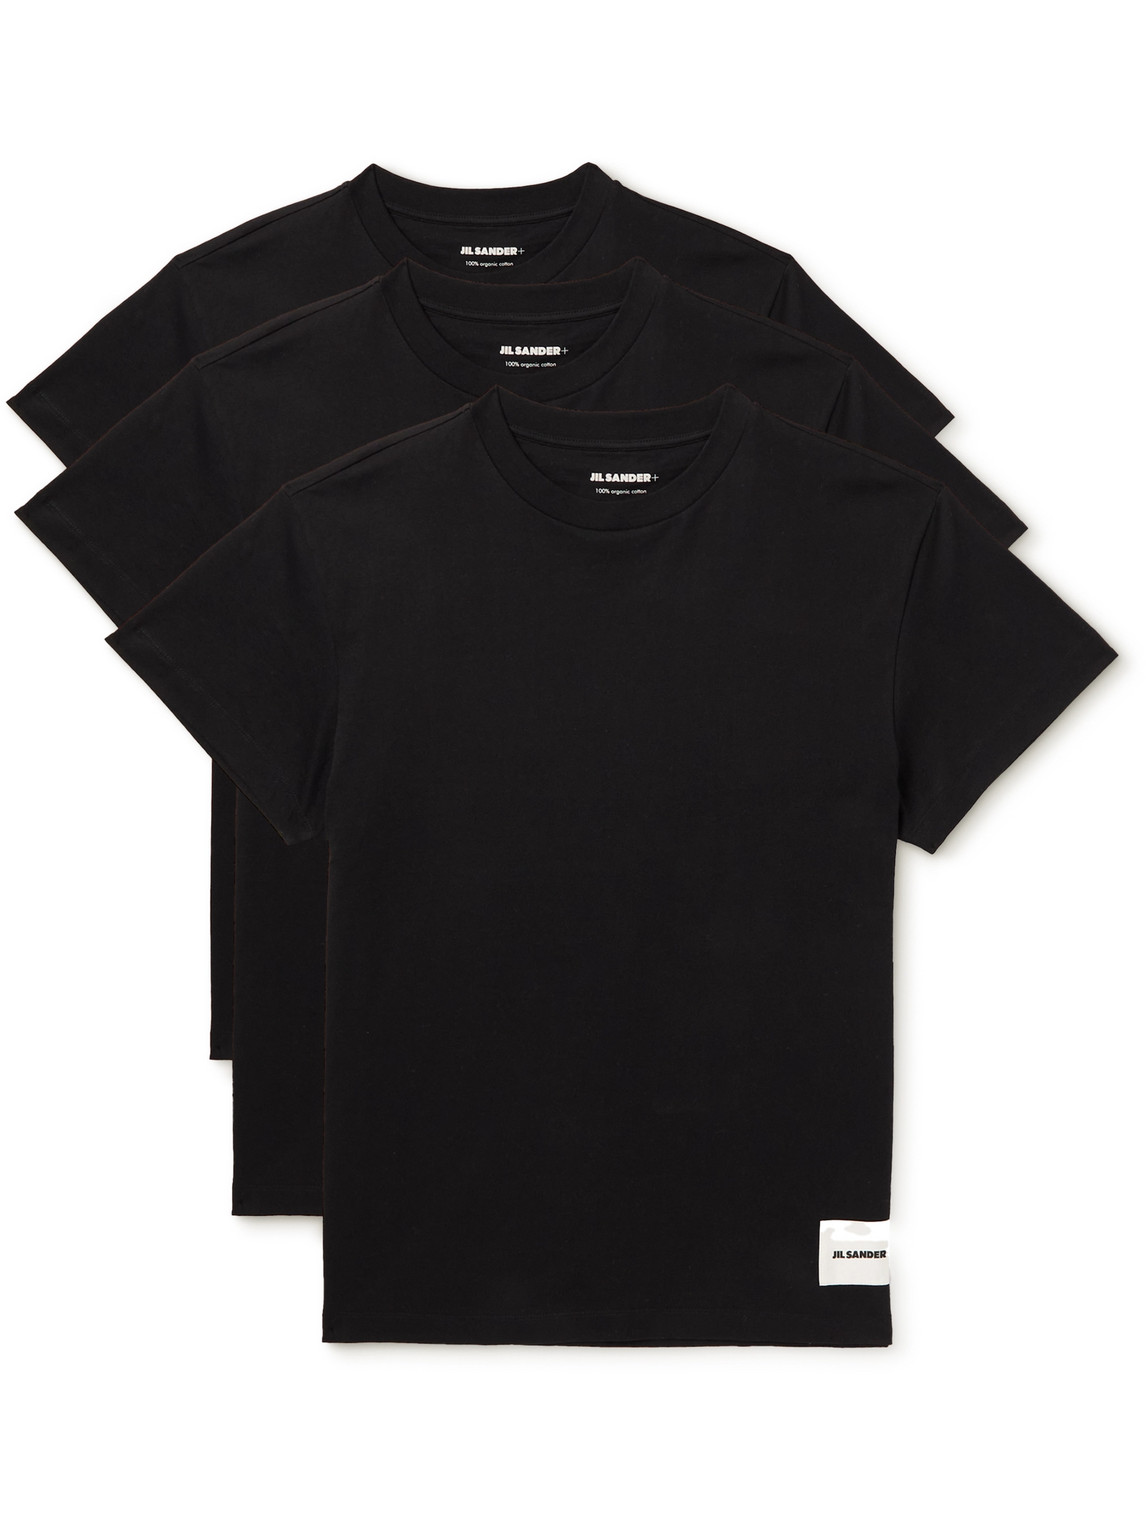 Jil Sander - Set of Three Organic Cotton-Jersey T-Shirts - Men - Black - L von Jil Sander